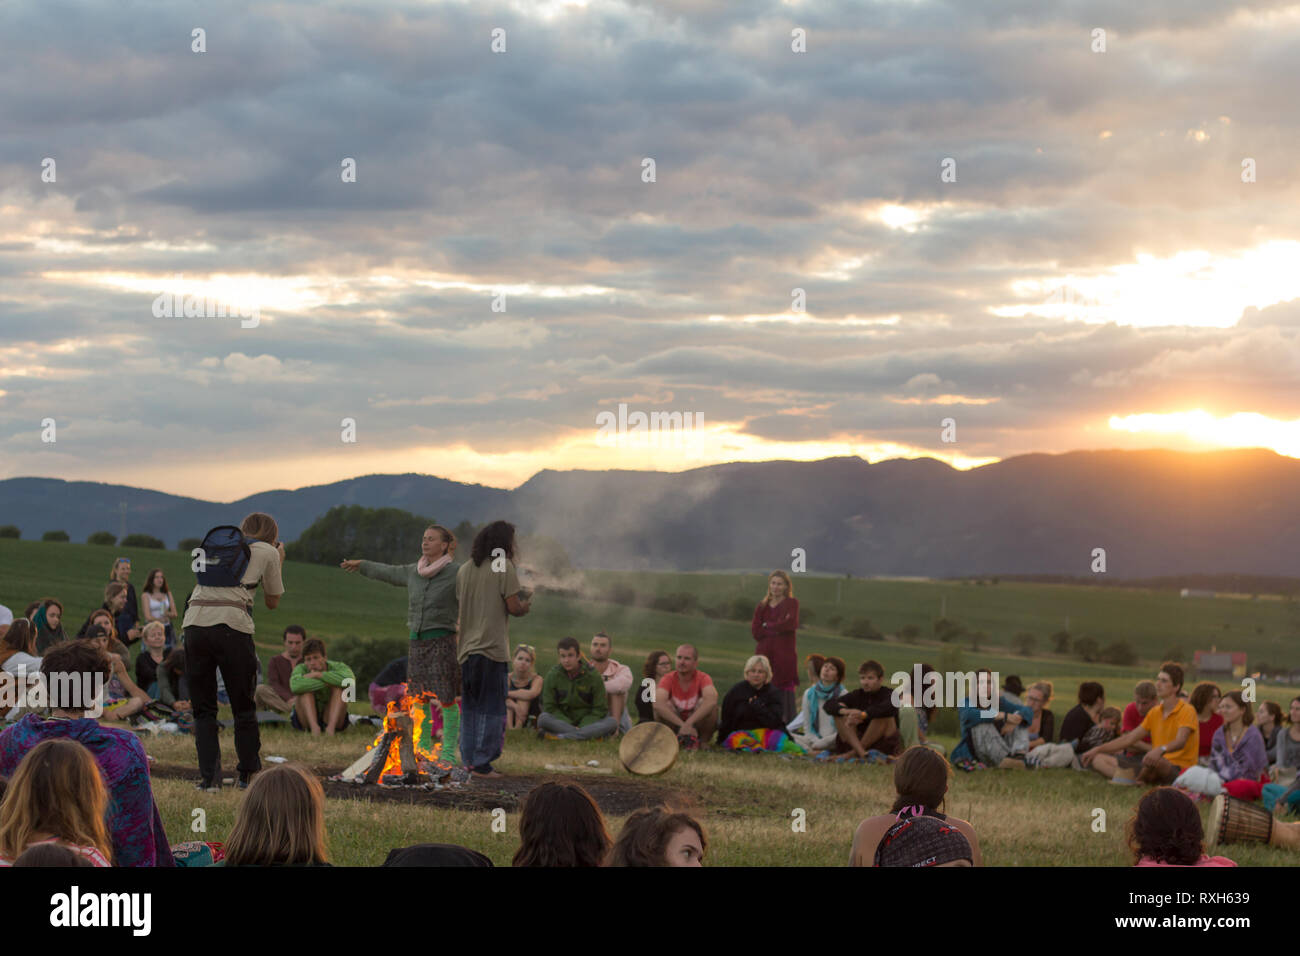 Drienok, Belgique - Juin 2017 : groupe de personnes assises dans la nature en appréciant le coucher du soleil, la Slovaquie Drienok Banque D'Images